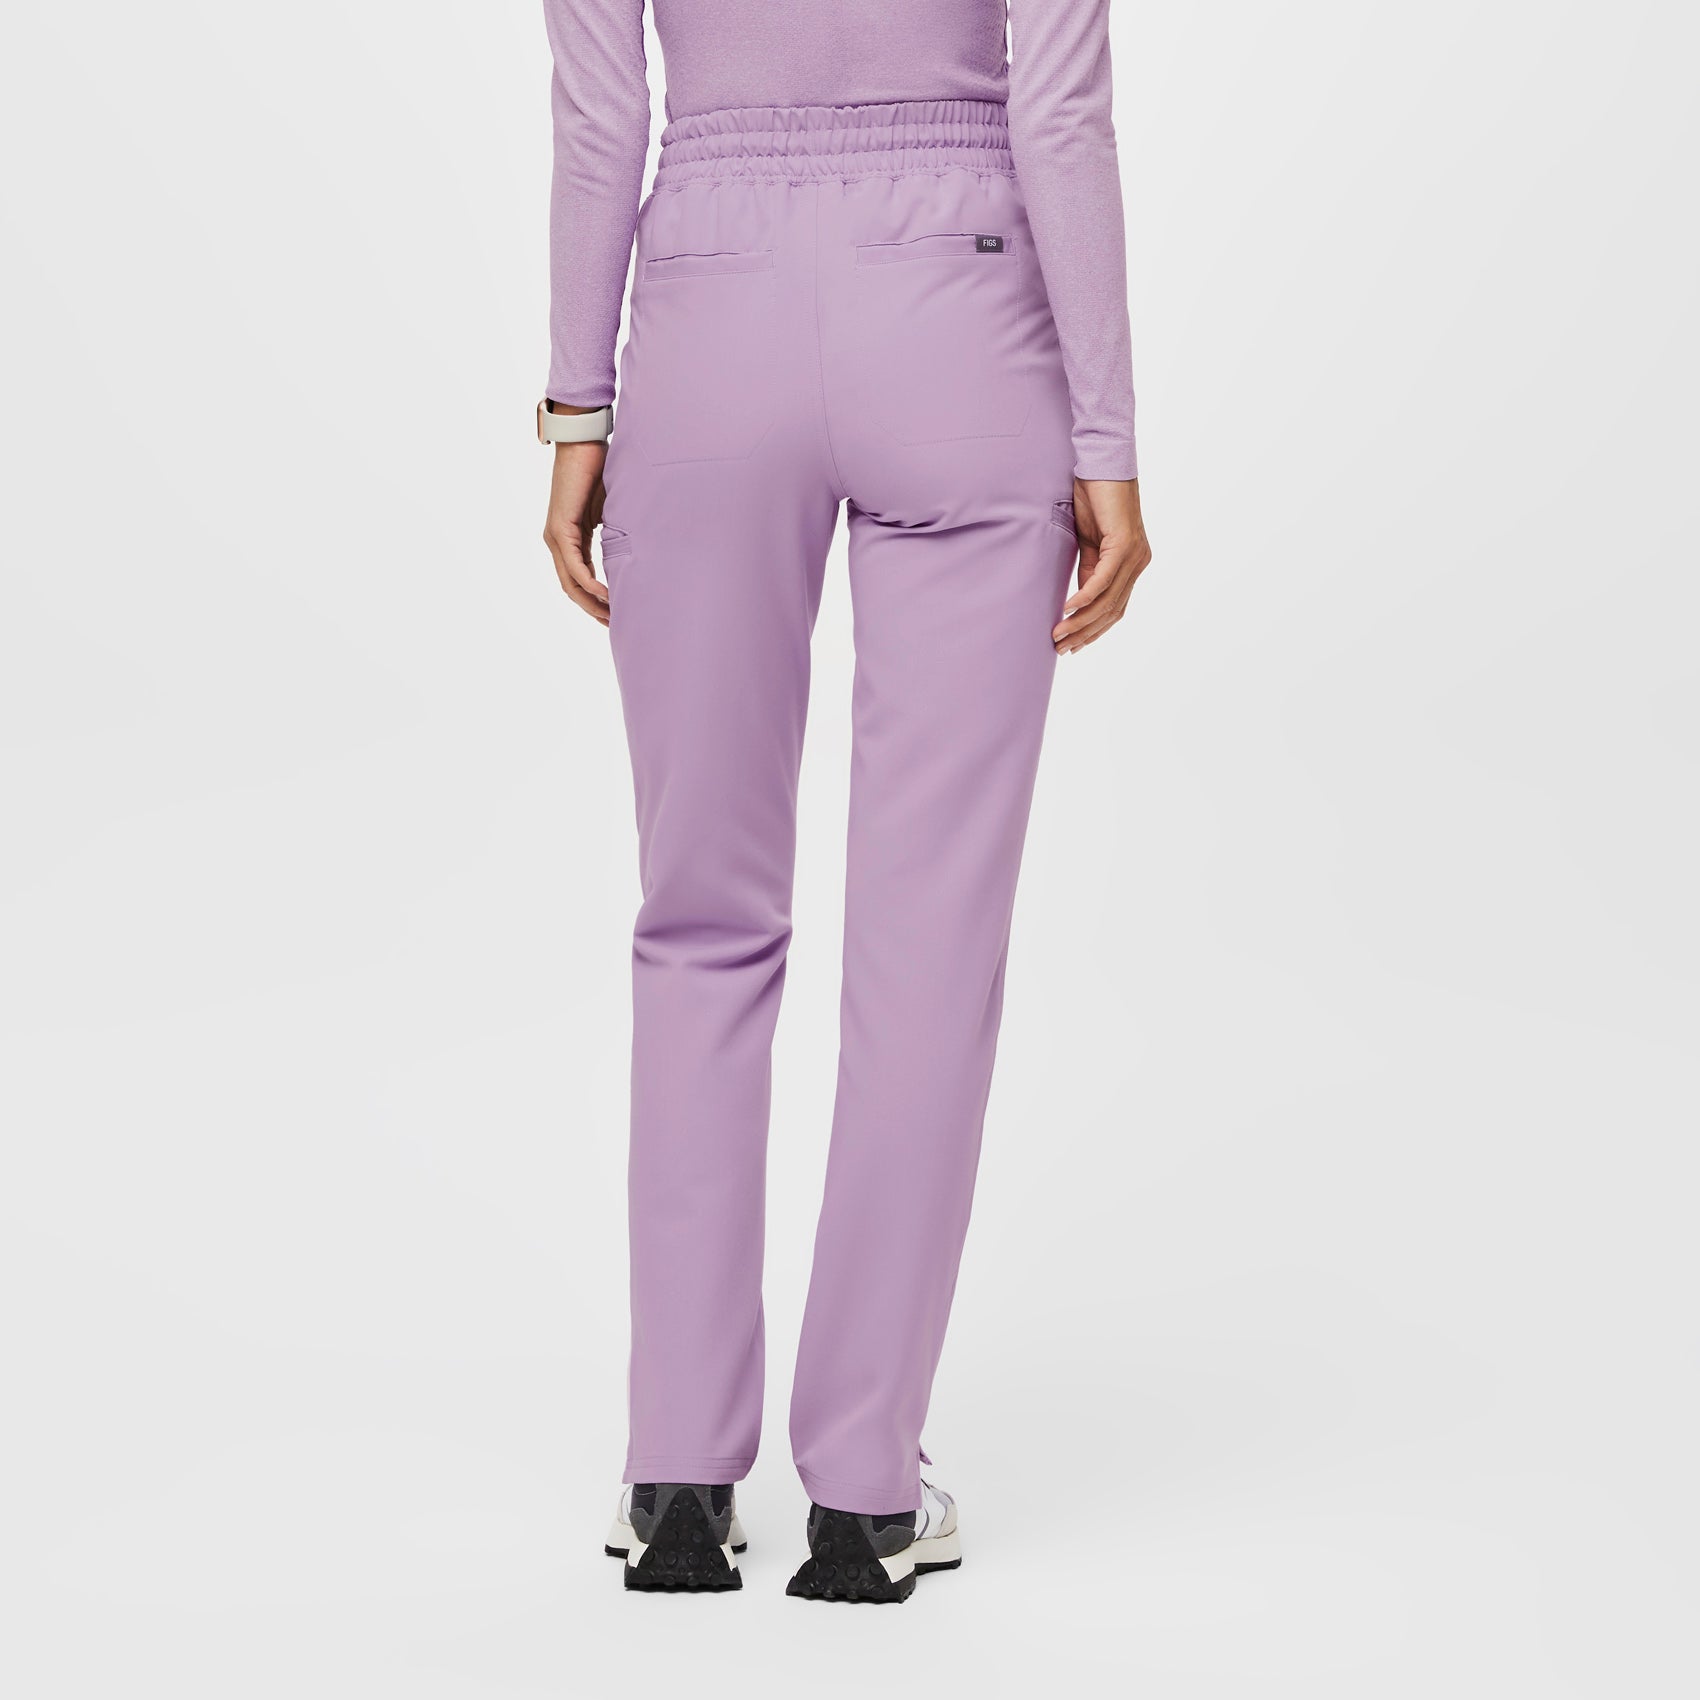 Purple Pants For Women